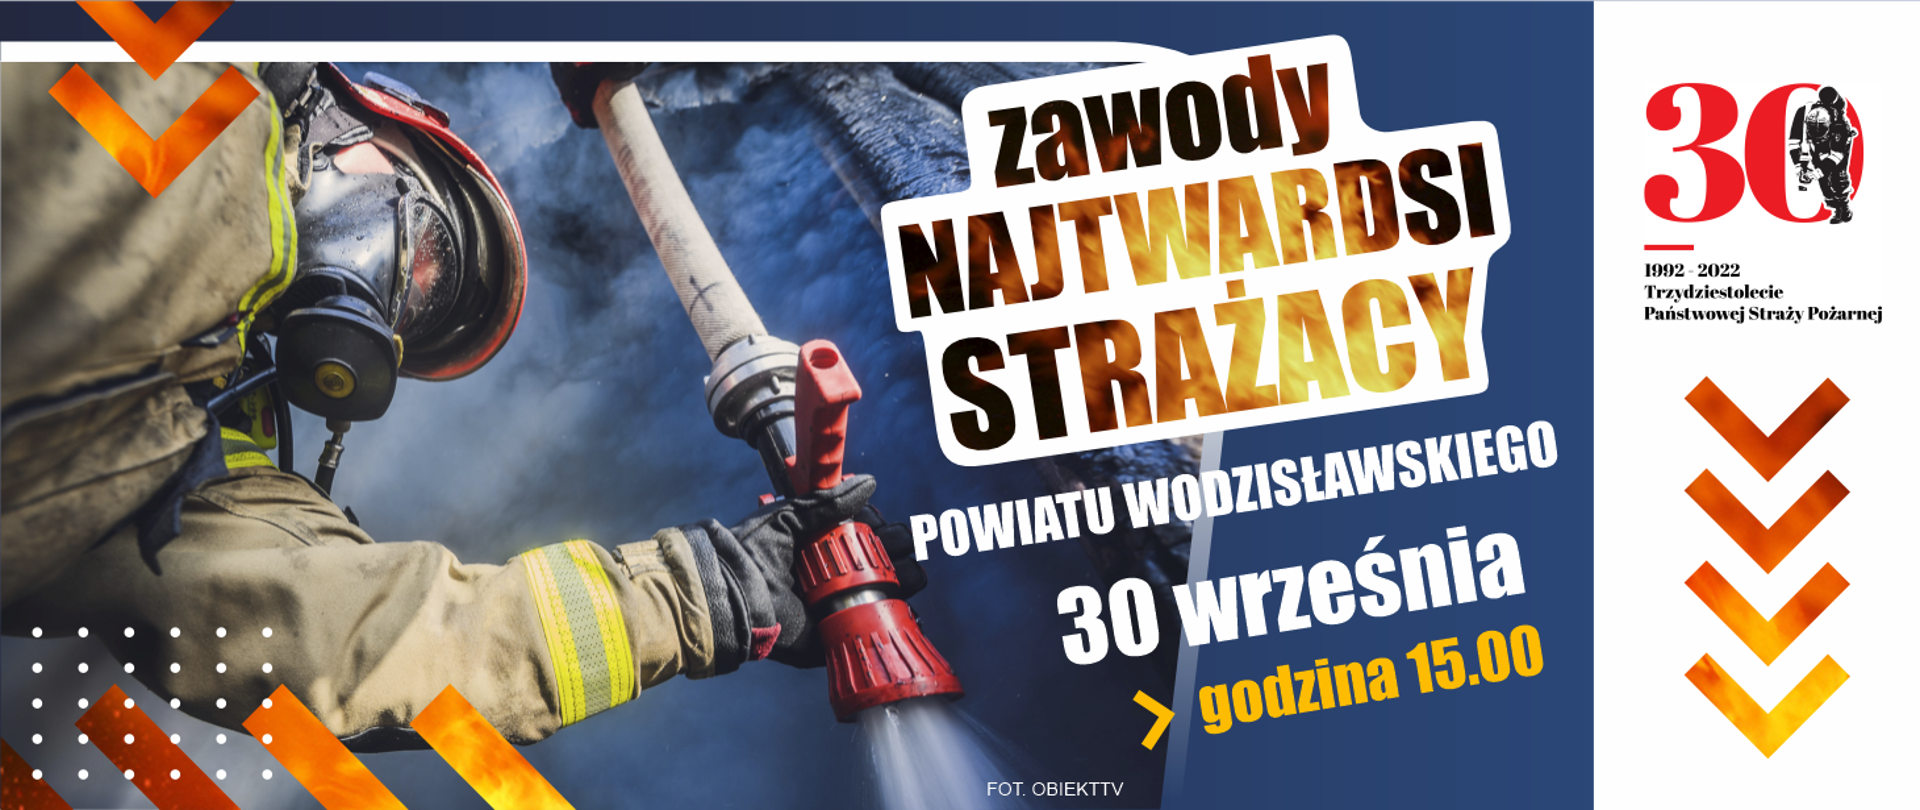 Baner reklamujący Zawody Najtwardsi Strażacy Powiatu Wodzisławskiego. 30 września 2022, godzina 15:00